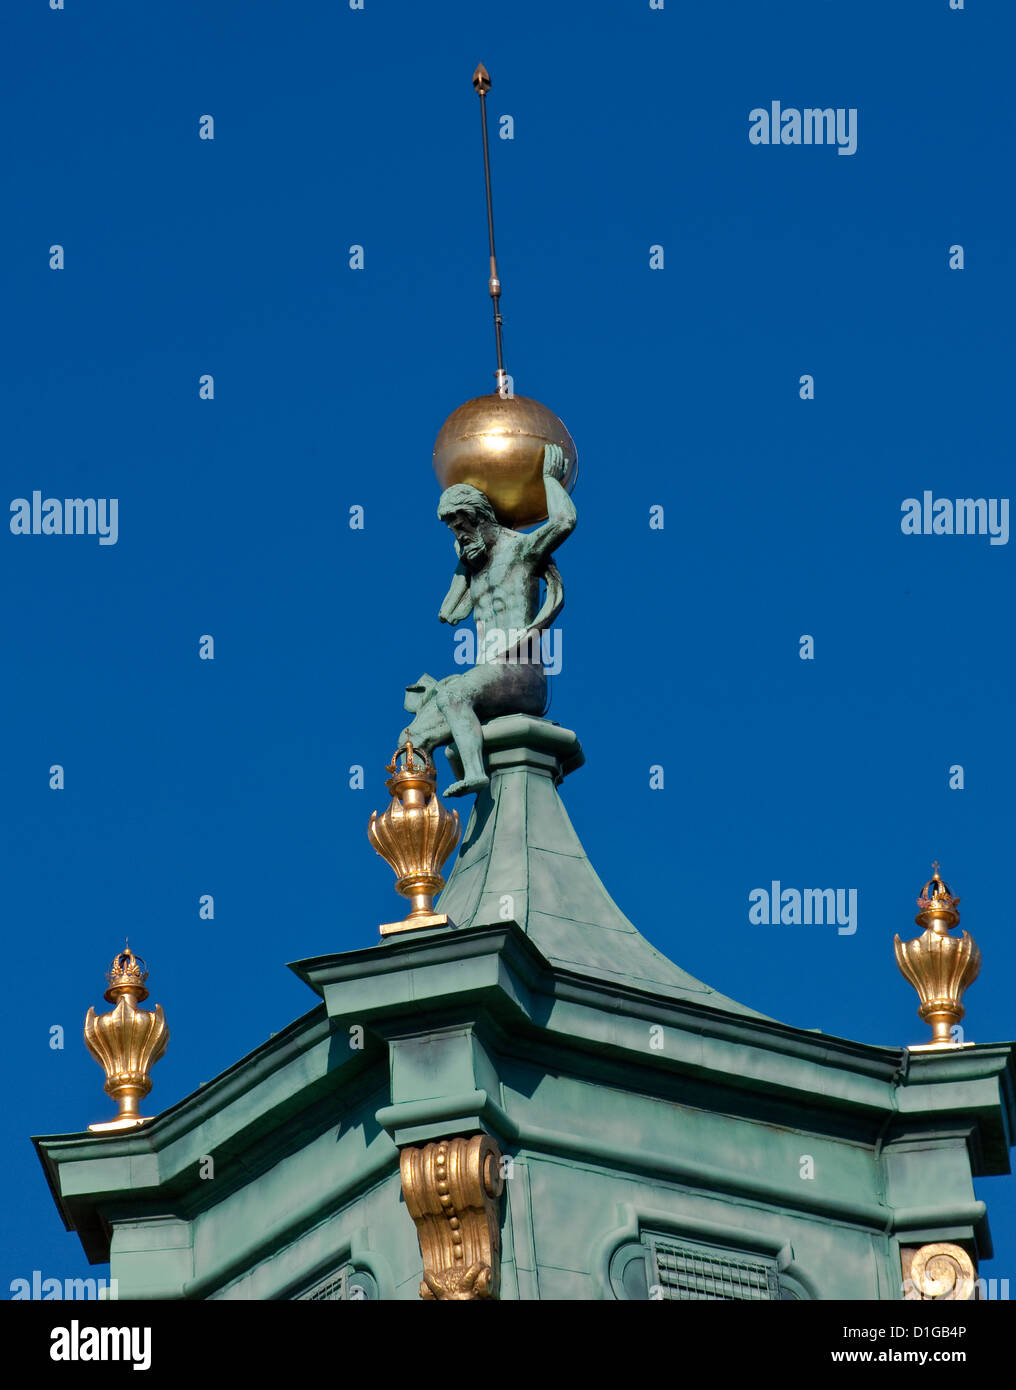 La figura de Atlas sosteniendo la esfera celeste en el chapitel barroco de la torre en el Palacio Wilanów, en Varsovia, Polonia Foto de stock